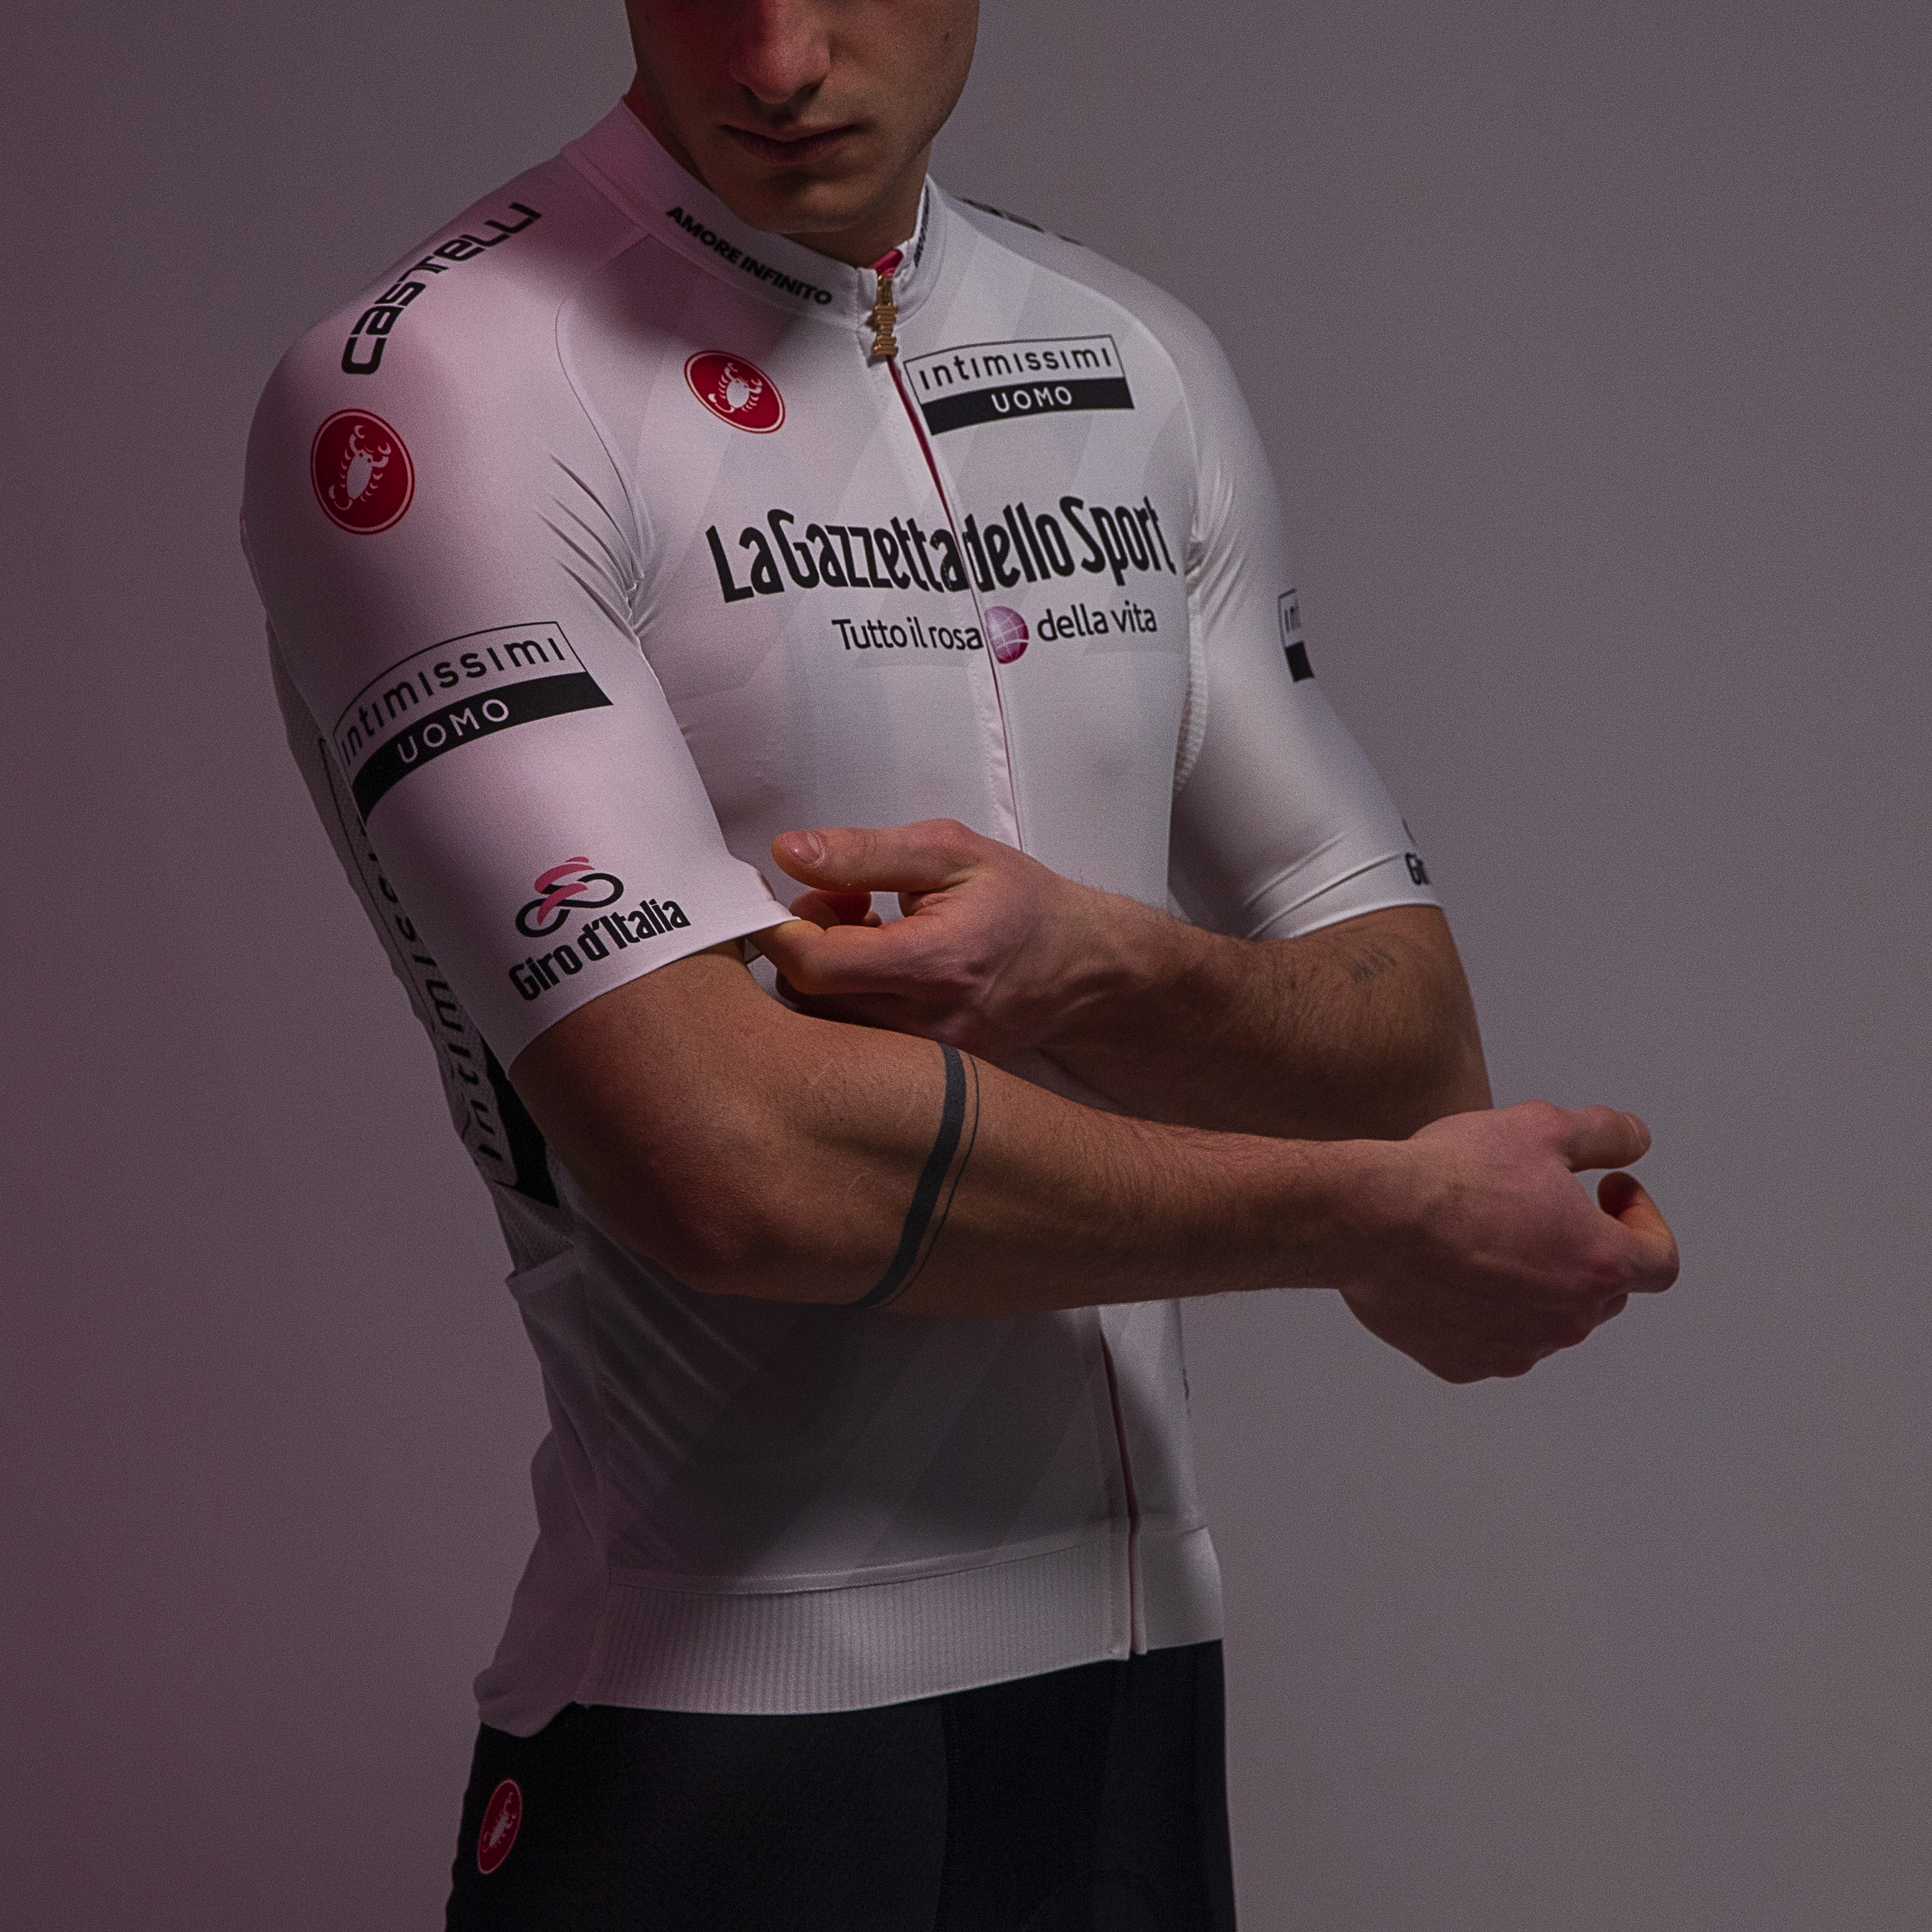 Intimissimi Uomo Giro d'Italia 2021